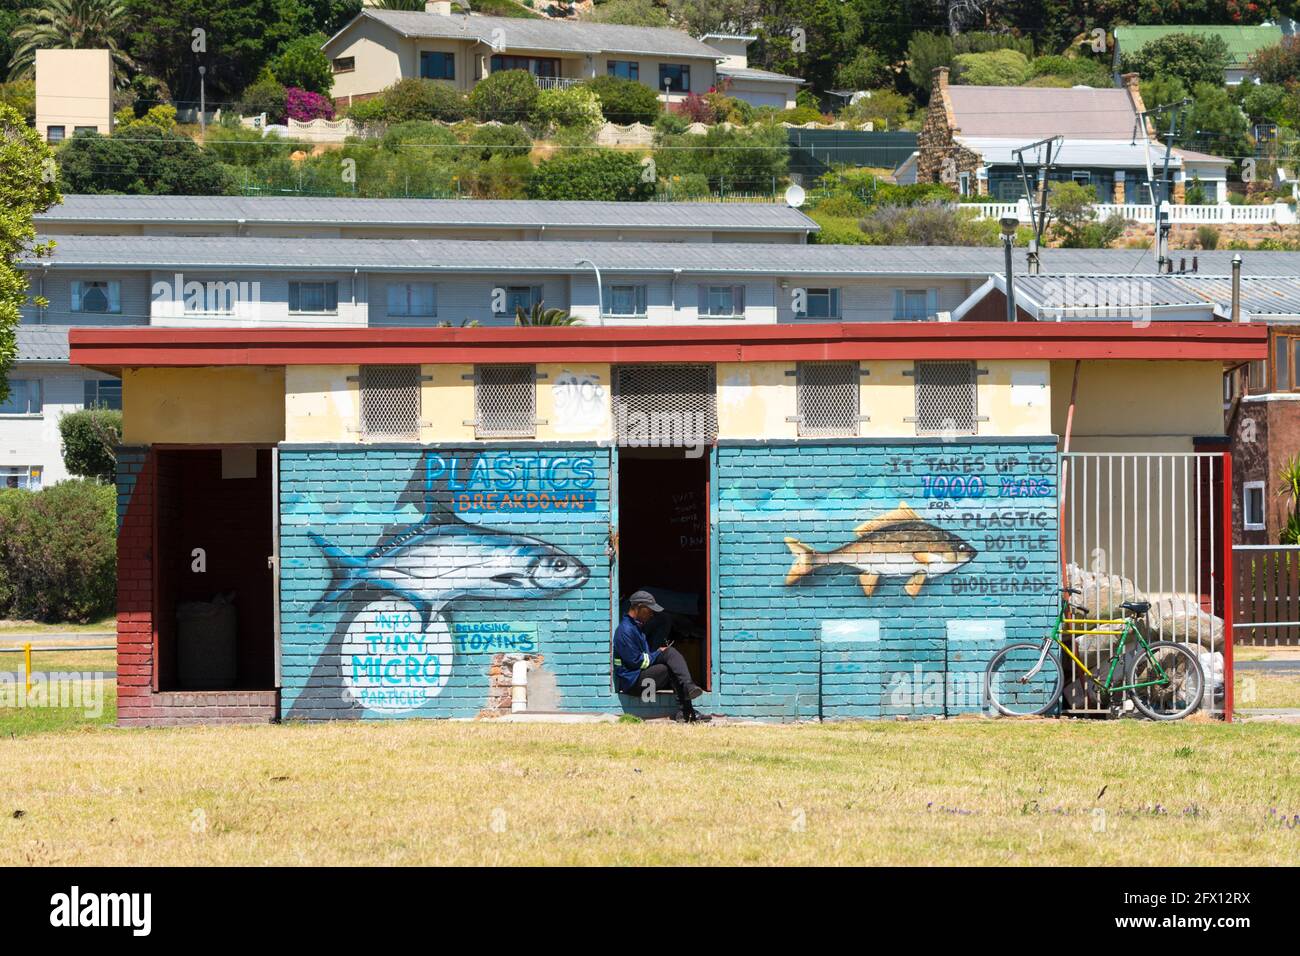 Salvare il mare dalla plastica, un murale d'arte sulla parete di un edificio pubblico con un messaggio ambientale sull'inquinamento plastico nell'oceano Foto Stock